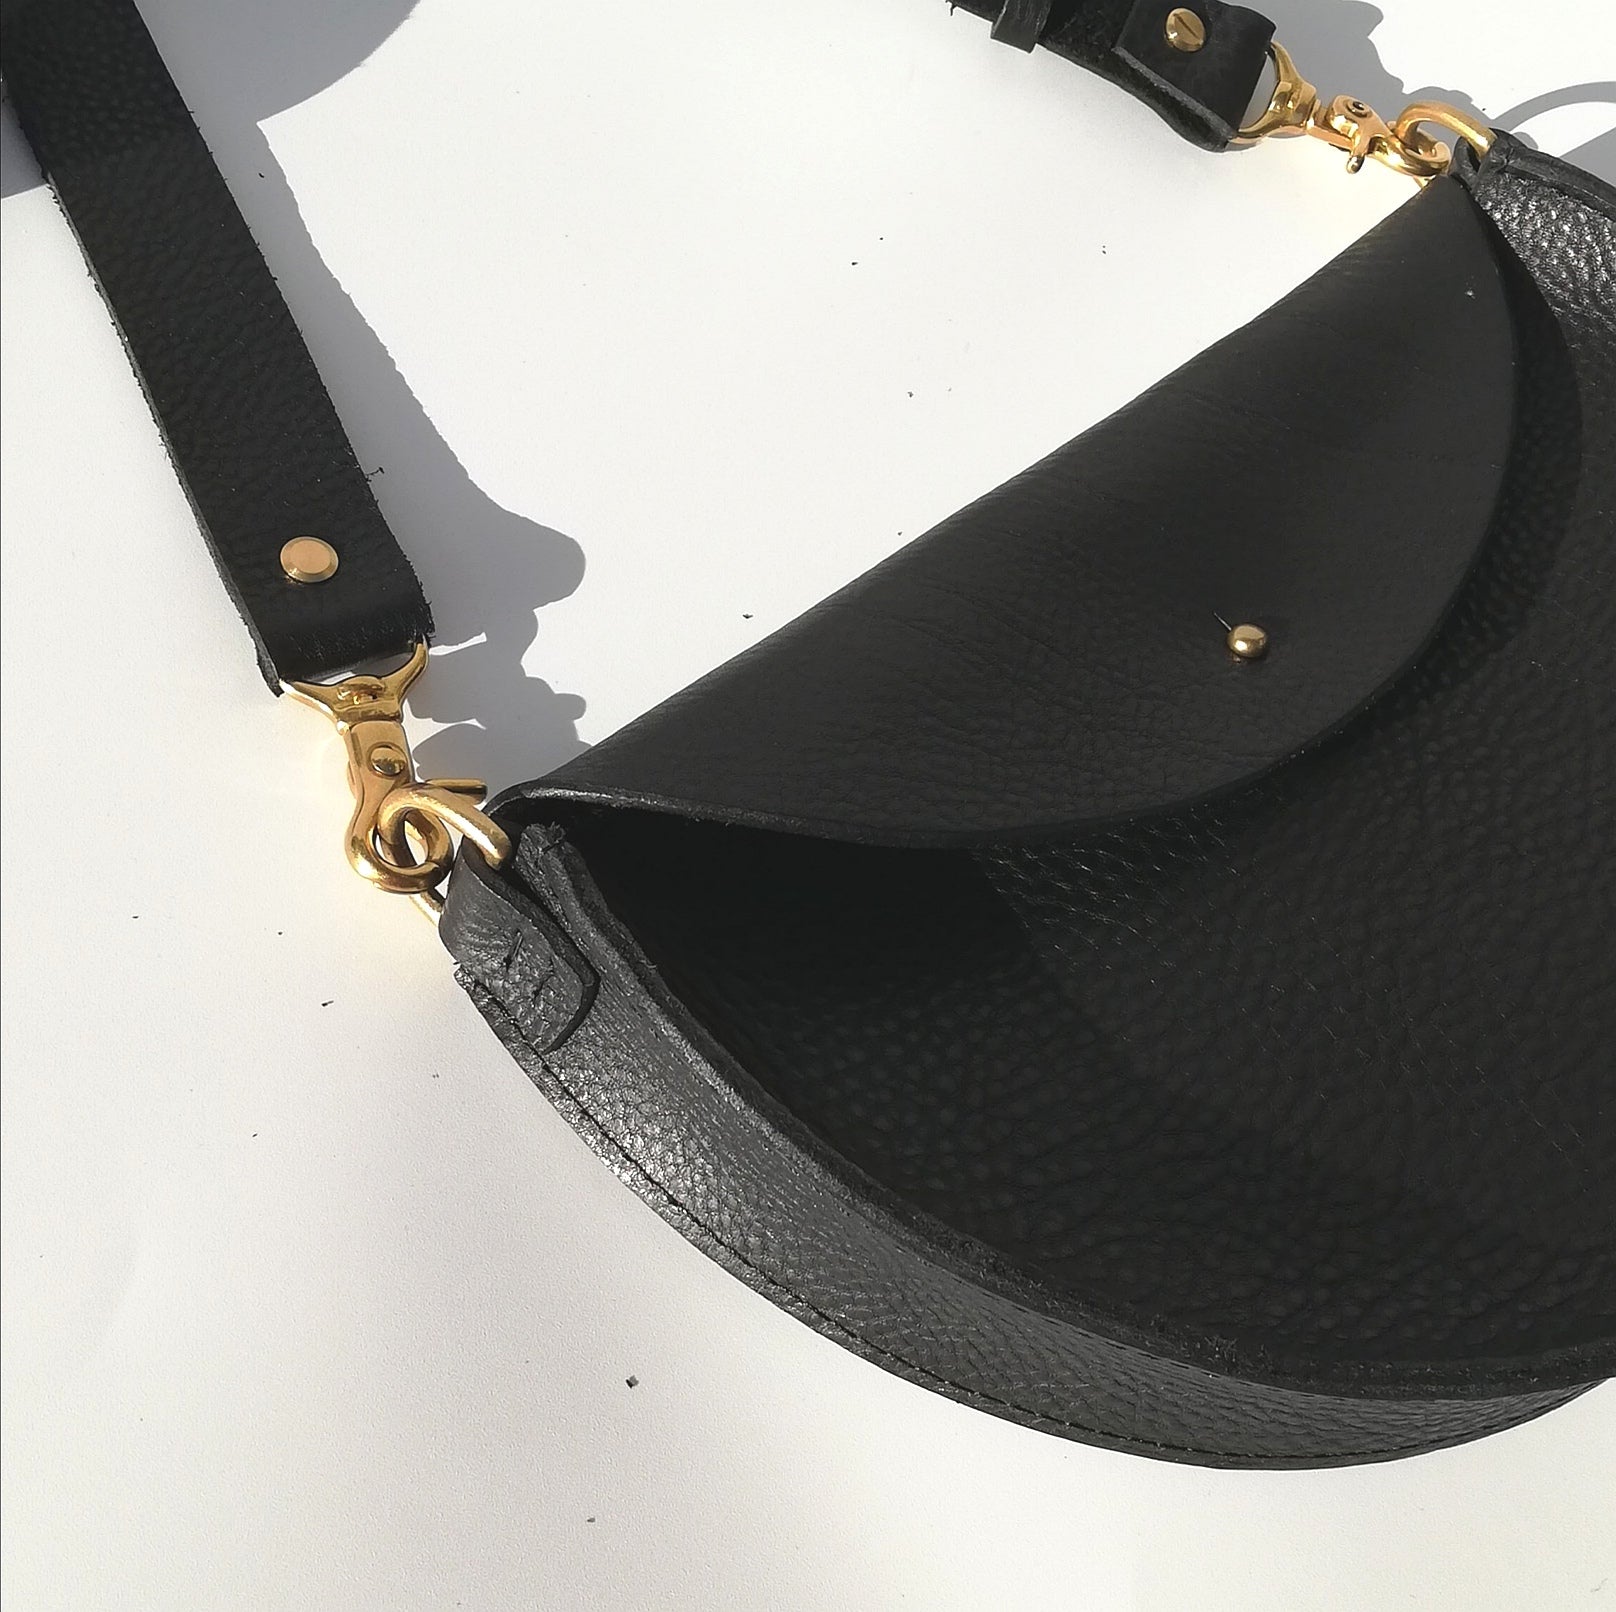 Handmade Leather Large Shoulder Bag - Black